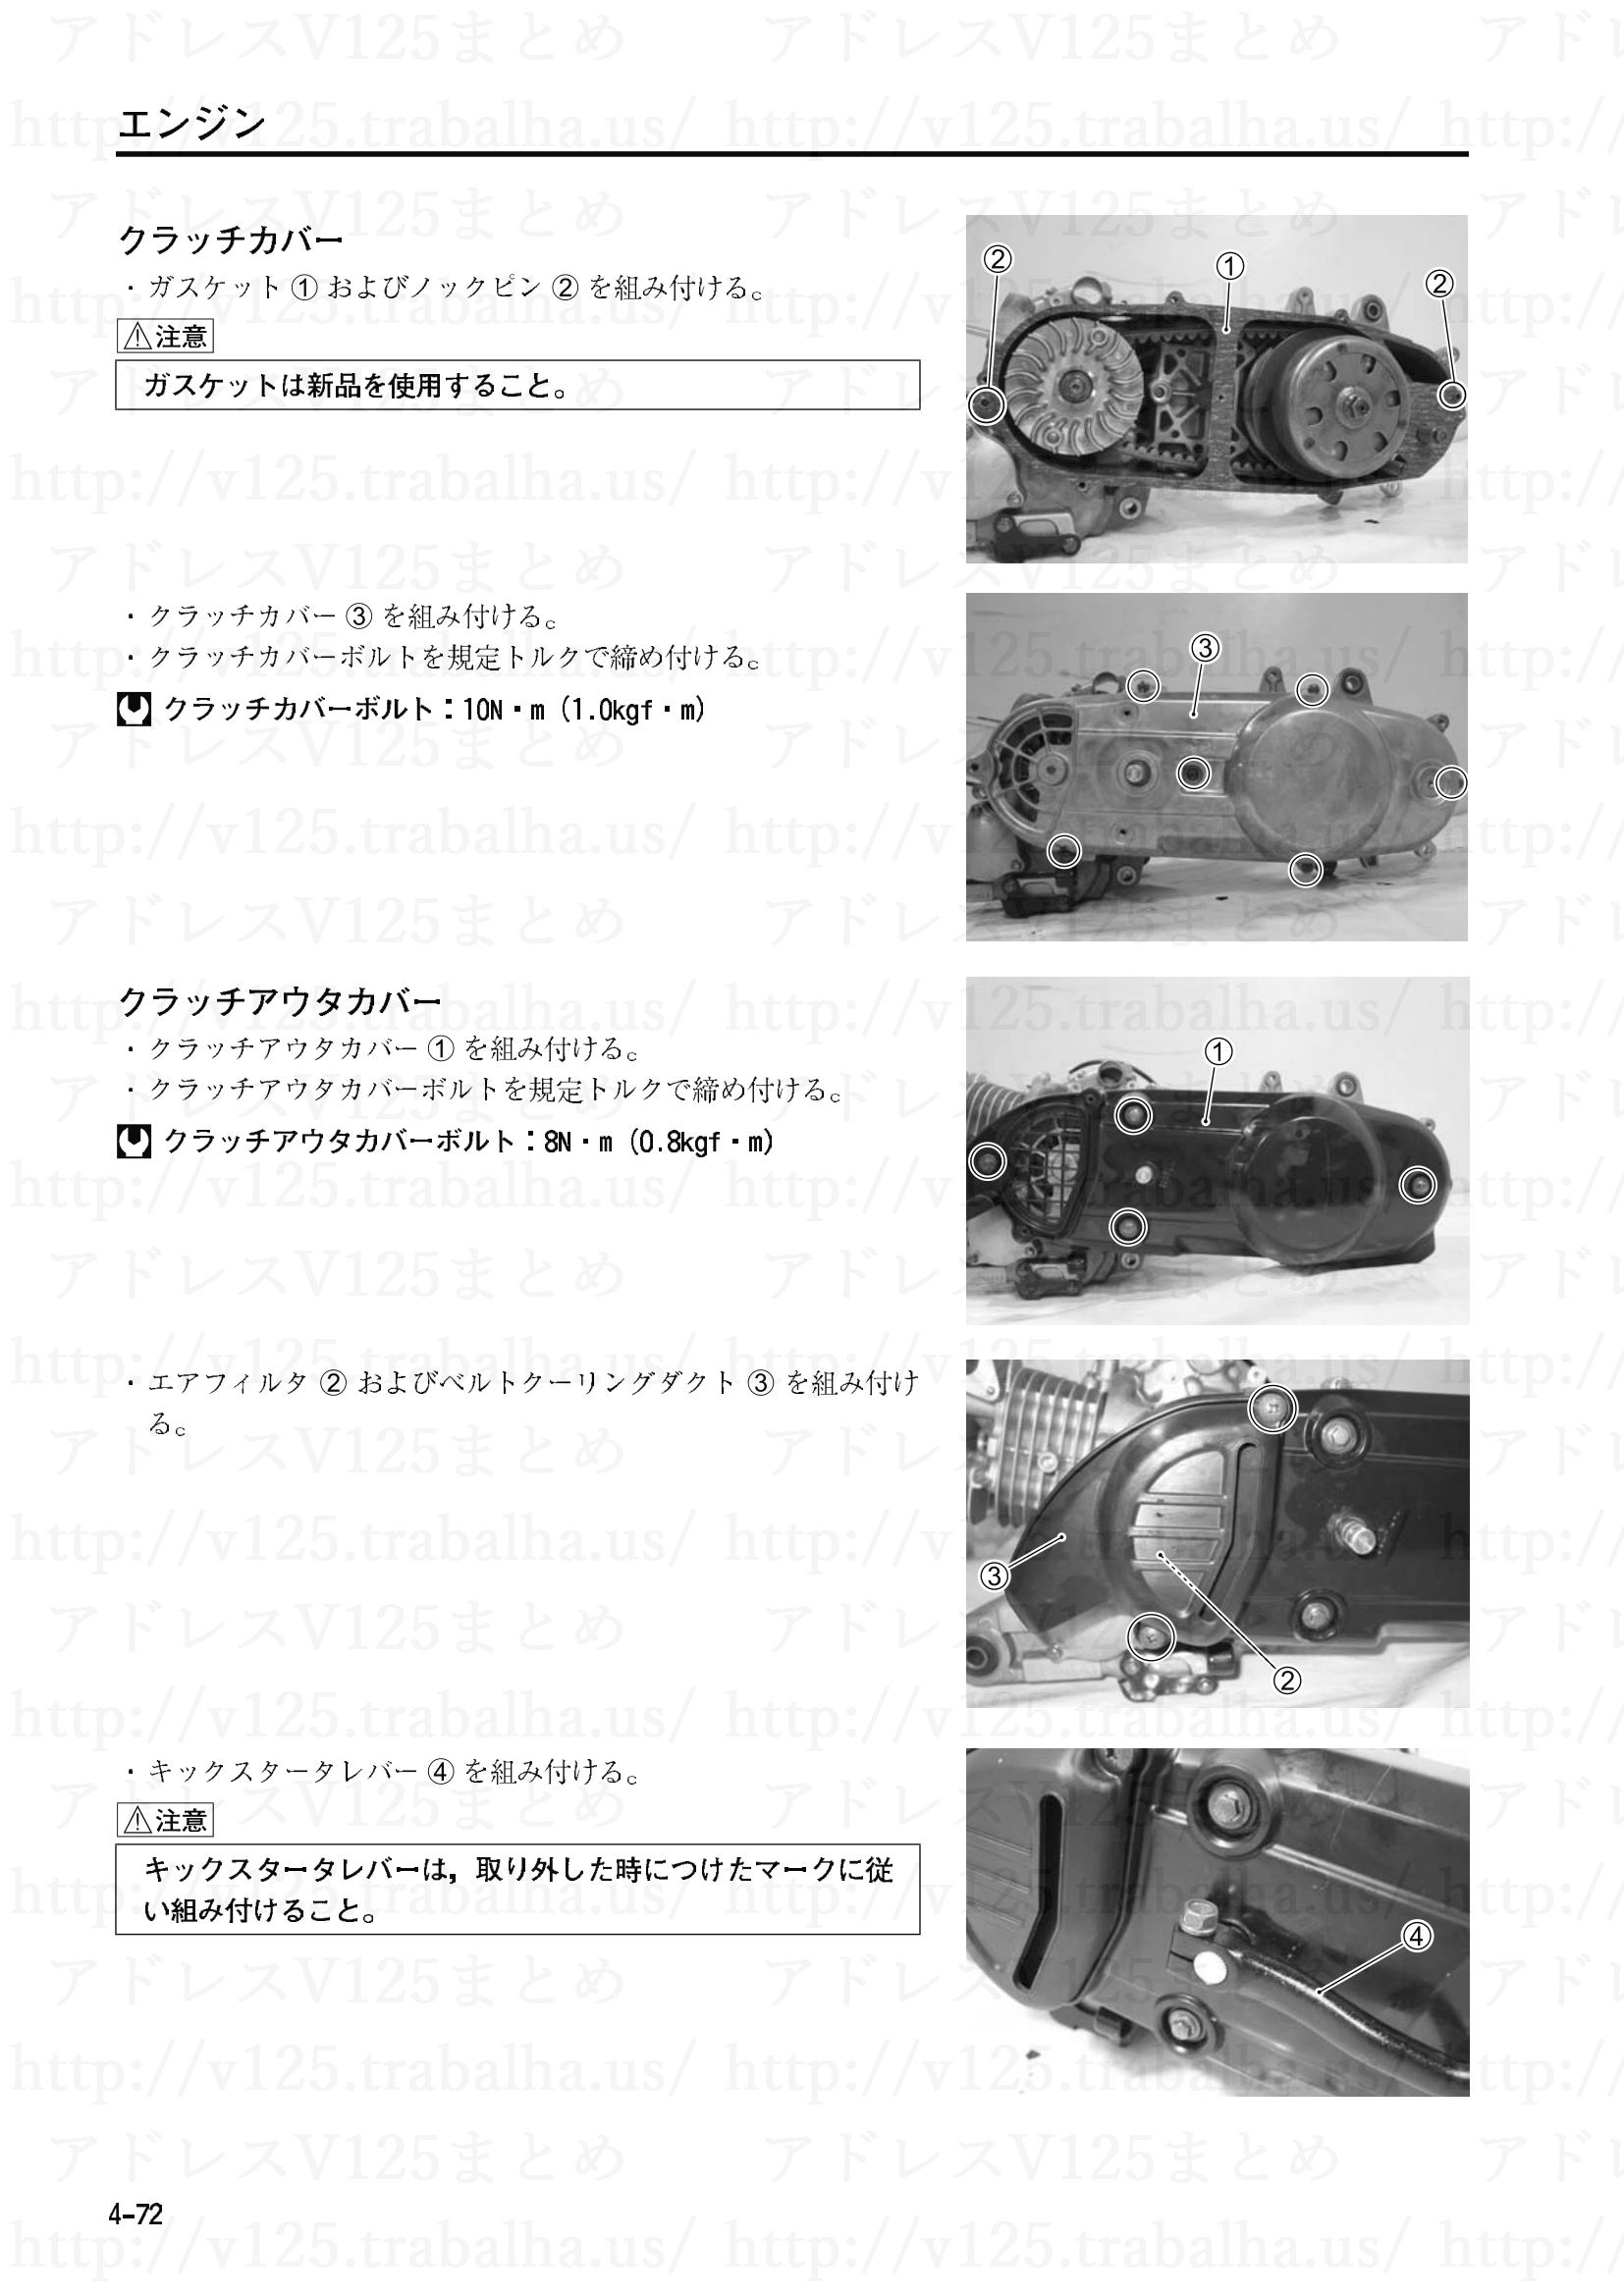 4-72【エンジン】エンジンの組立て16